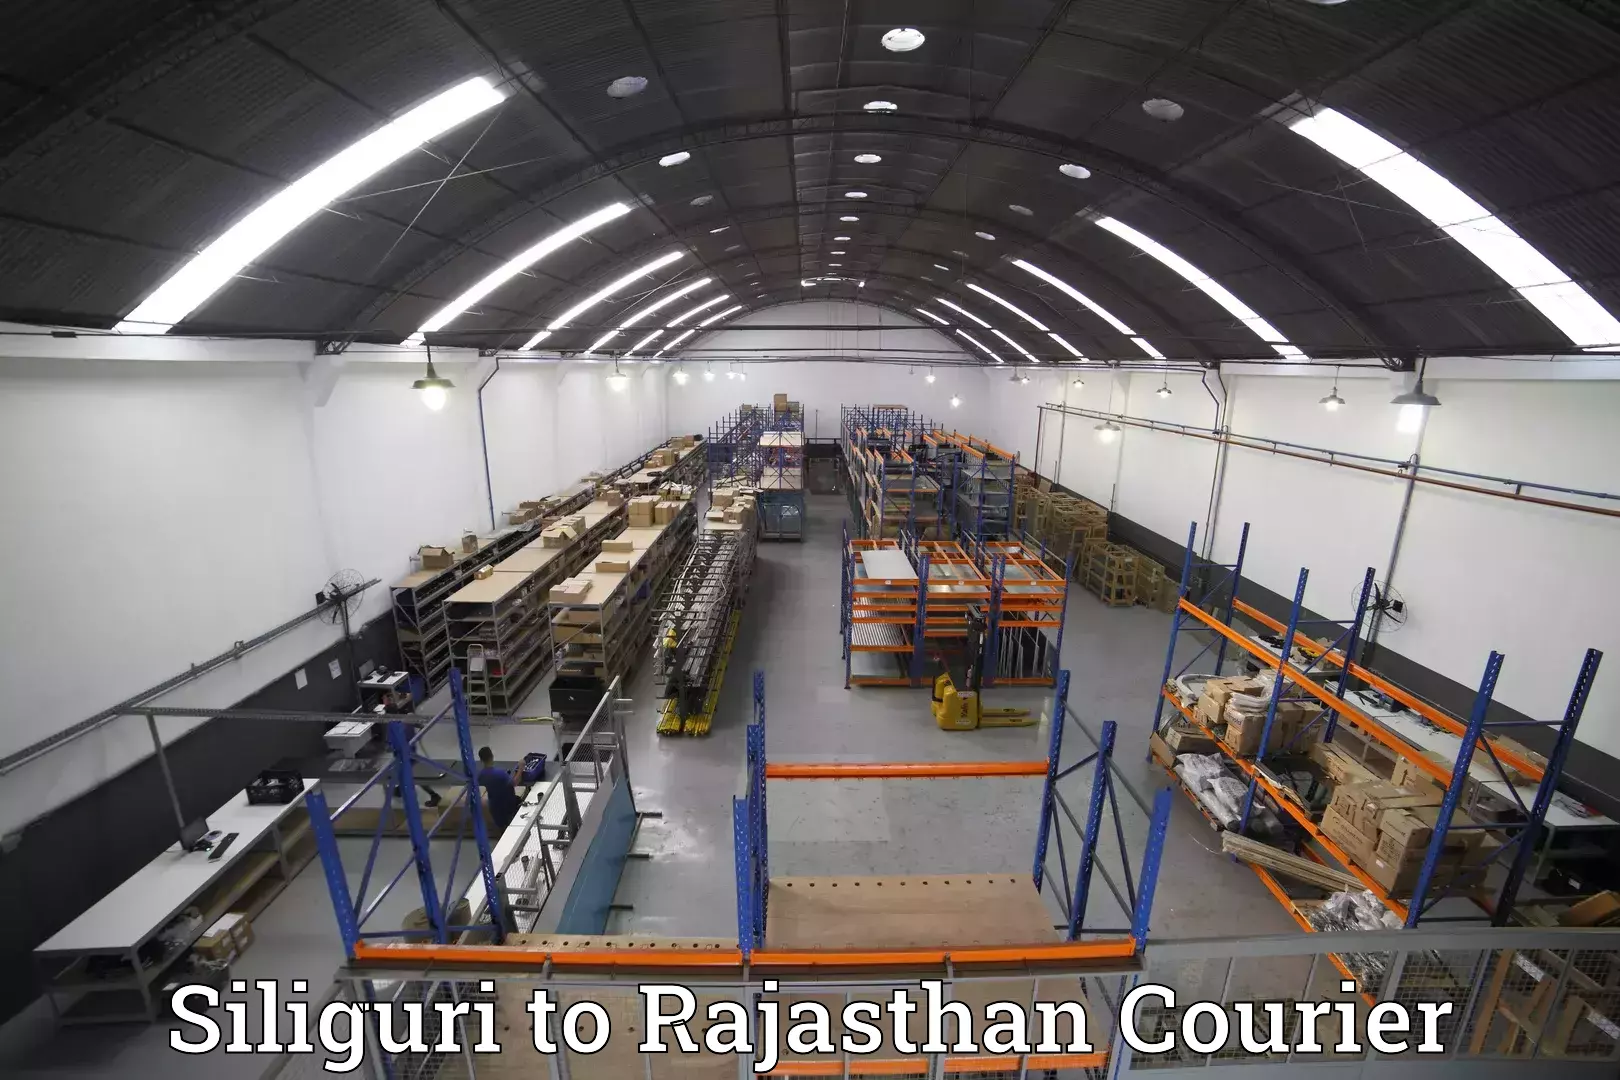 Hassle-free luggage shipping Siliguri to Sri Vijaynagar